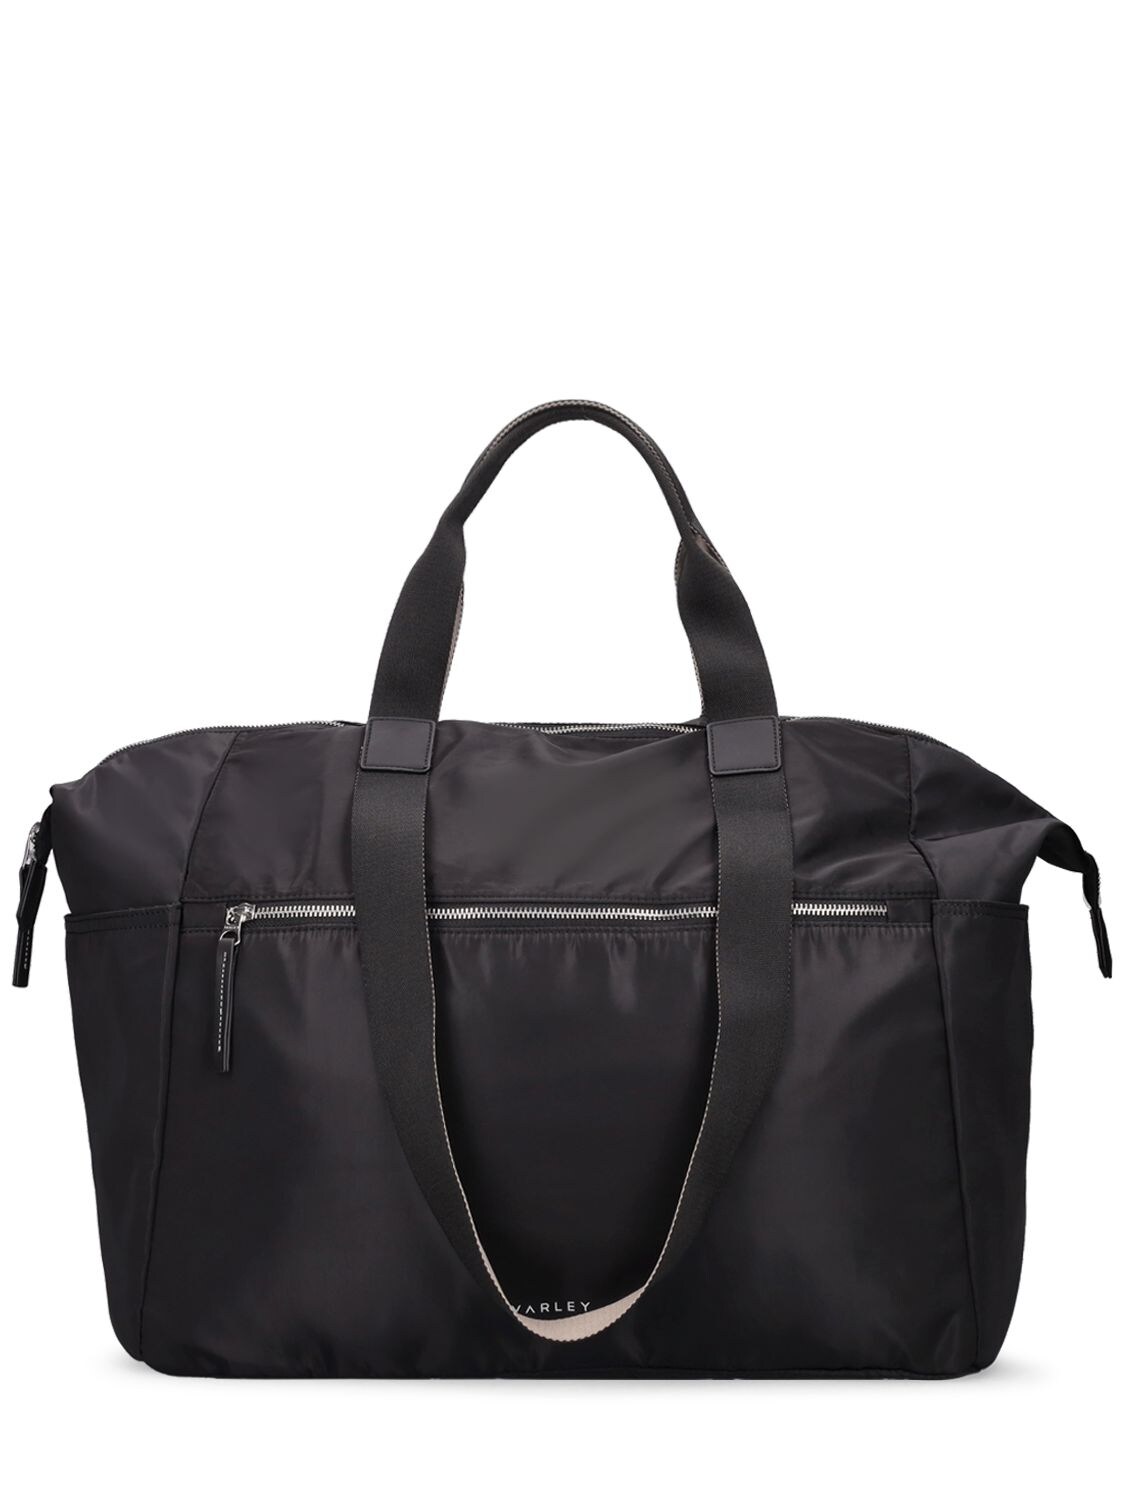 Shop Varley Montlake Nylon Weekend Bag In Black